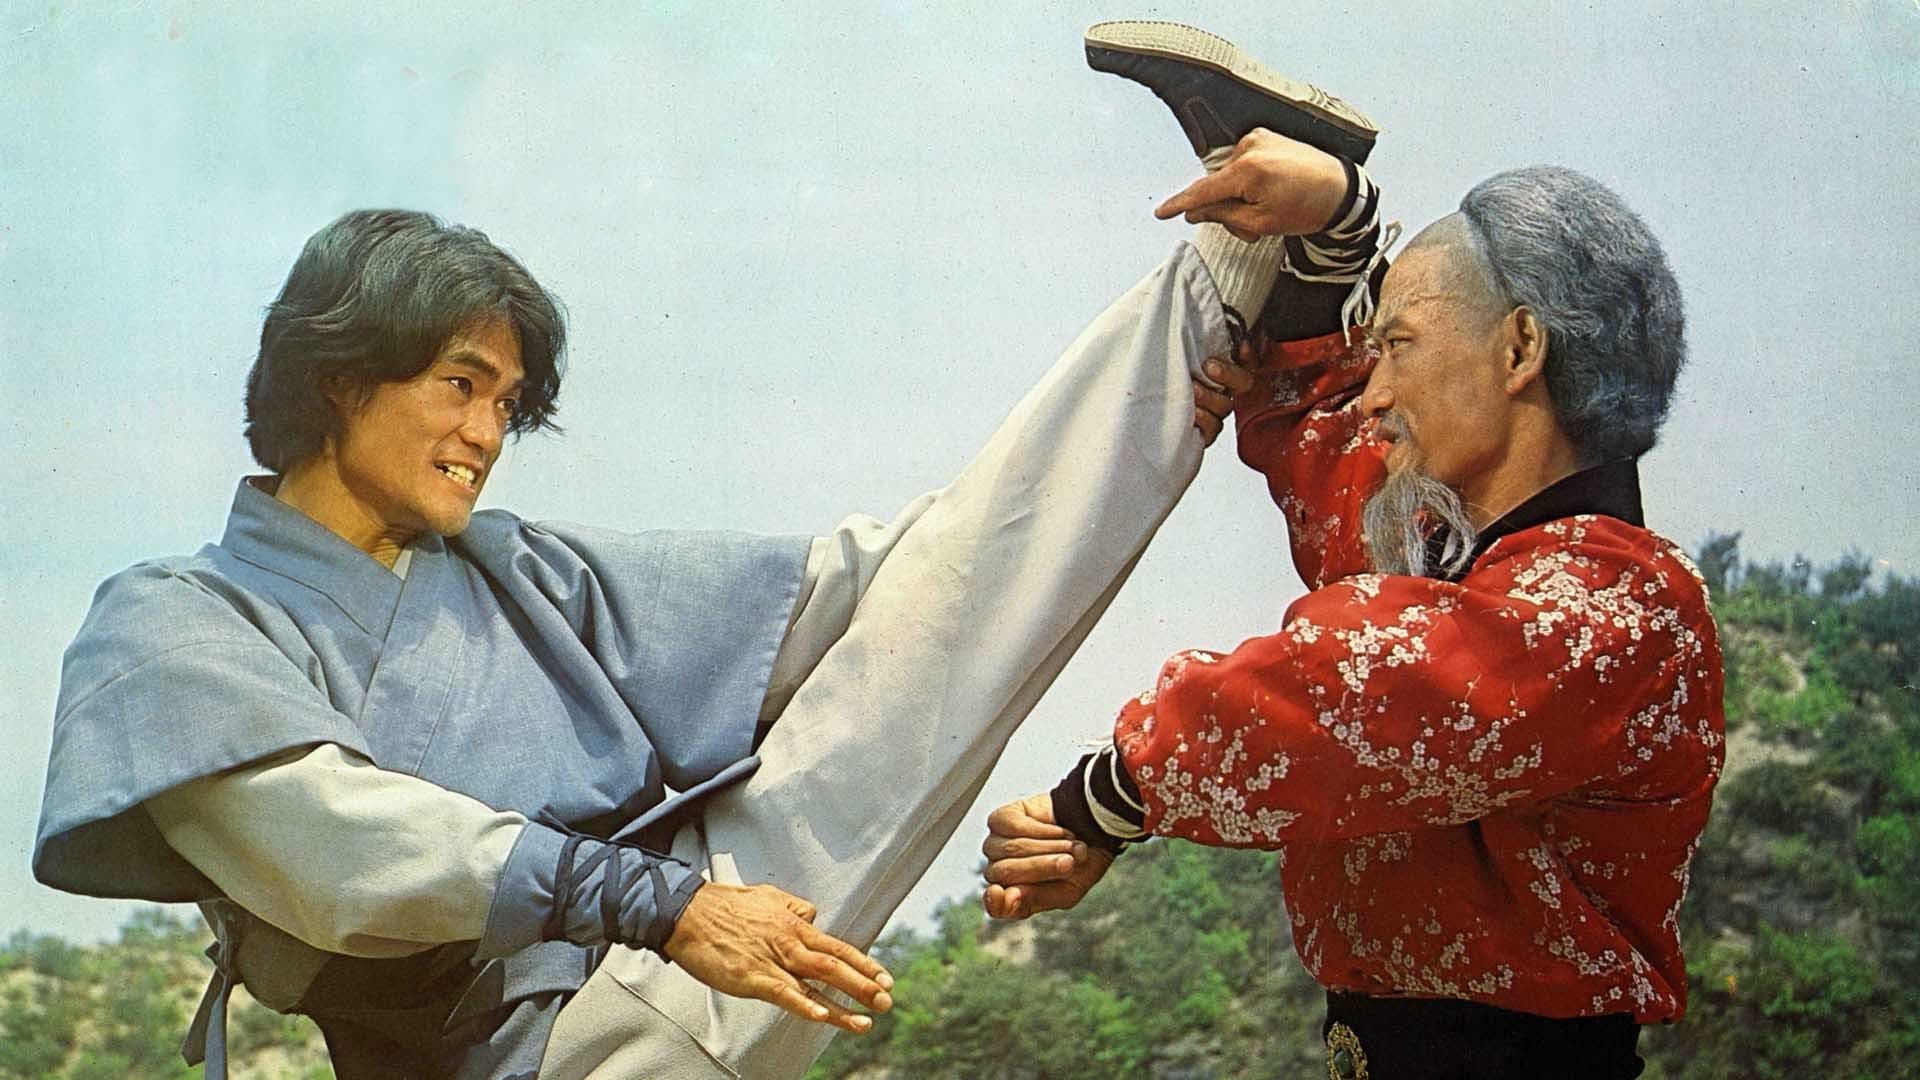 Cubierta de Duelo a muerte de Kung-Fu